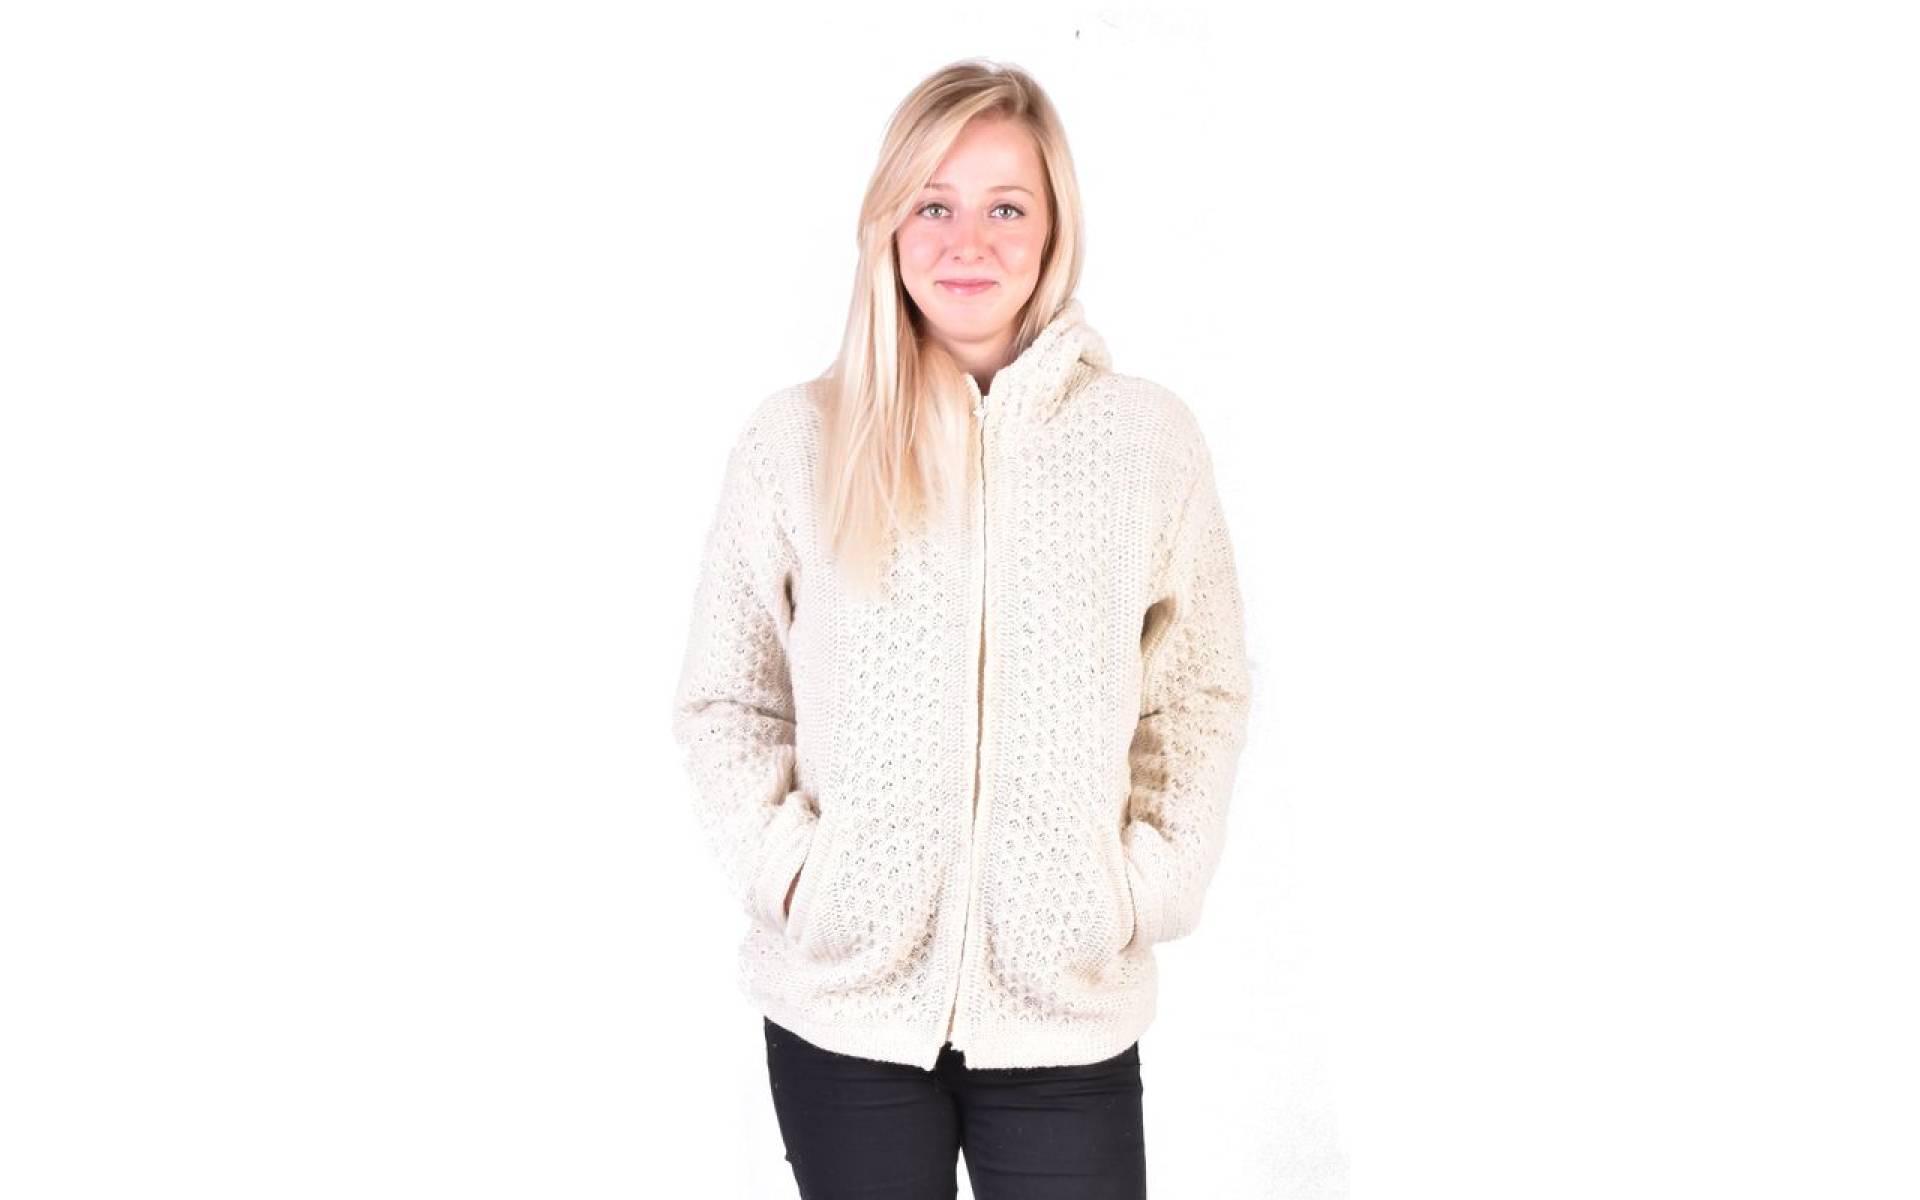 Biely vlnený sveter s kapucňou a vreckami, unisex